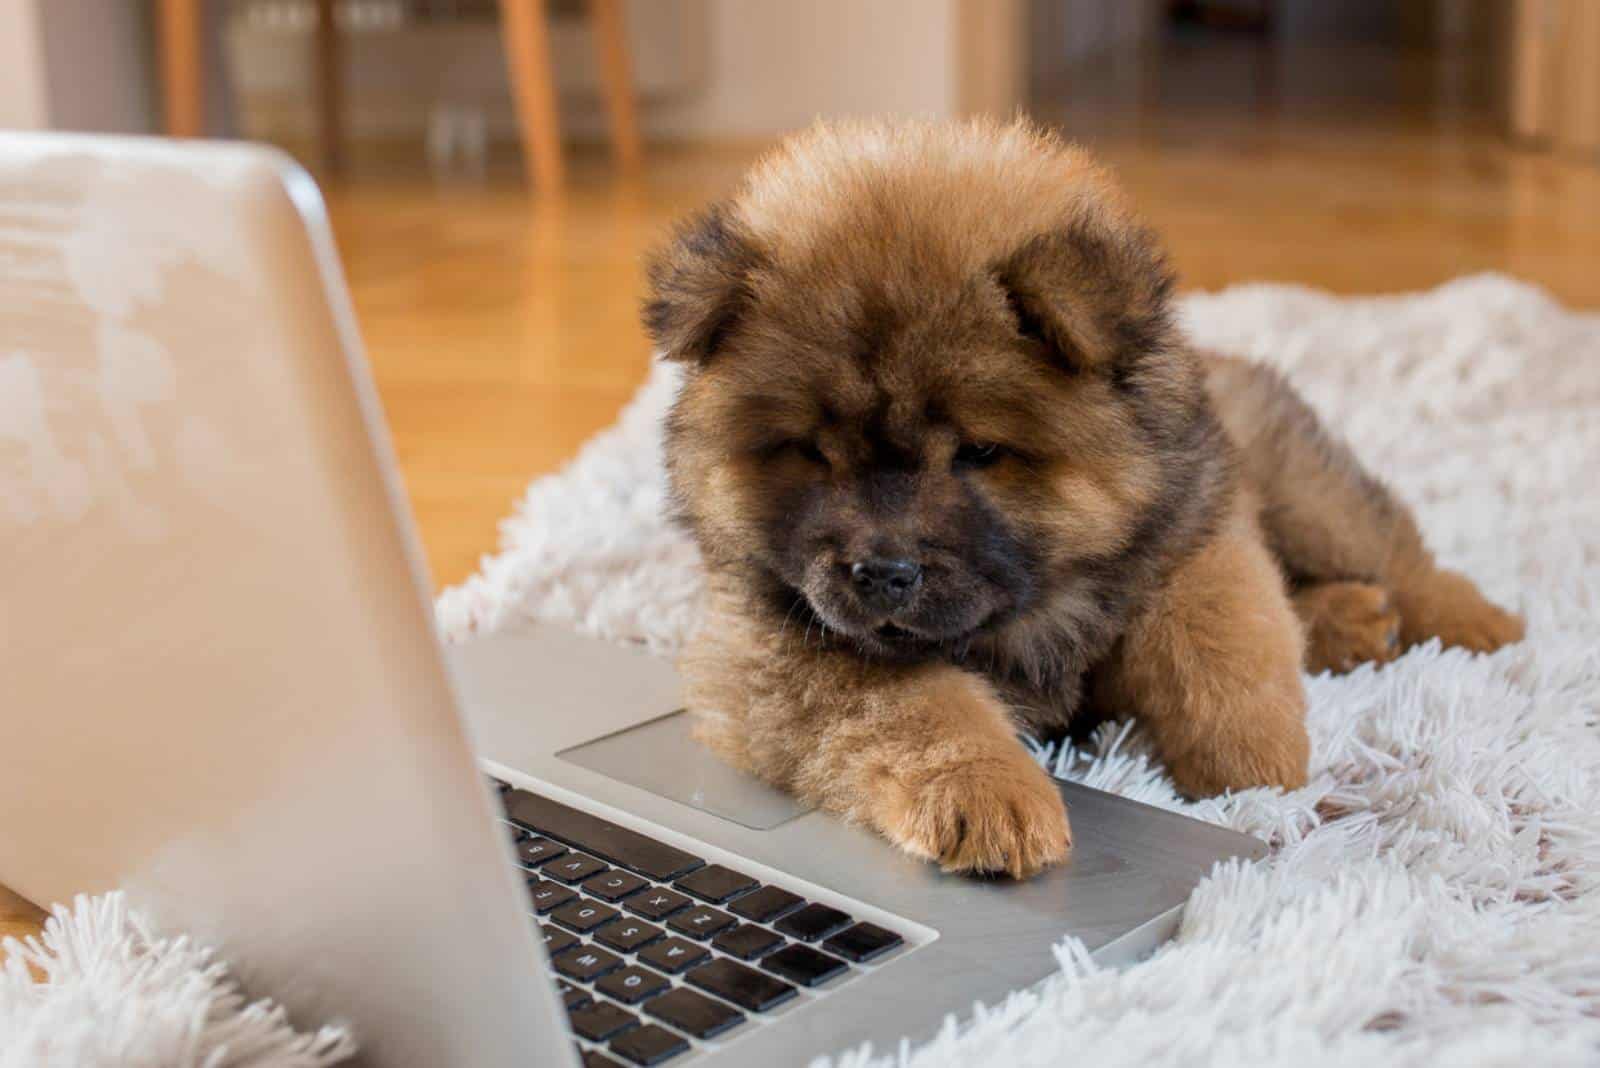 Hund, der Laptop betrachtet